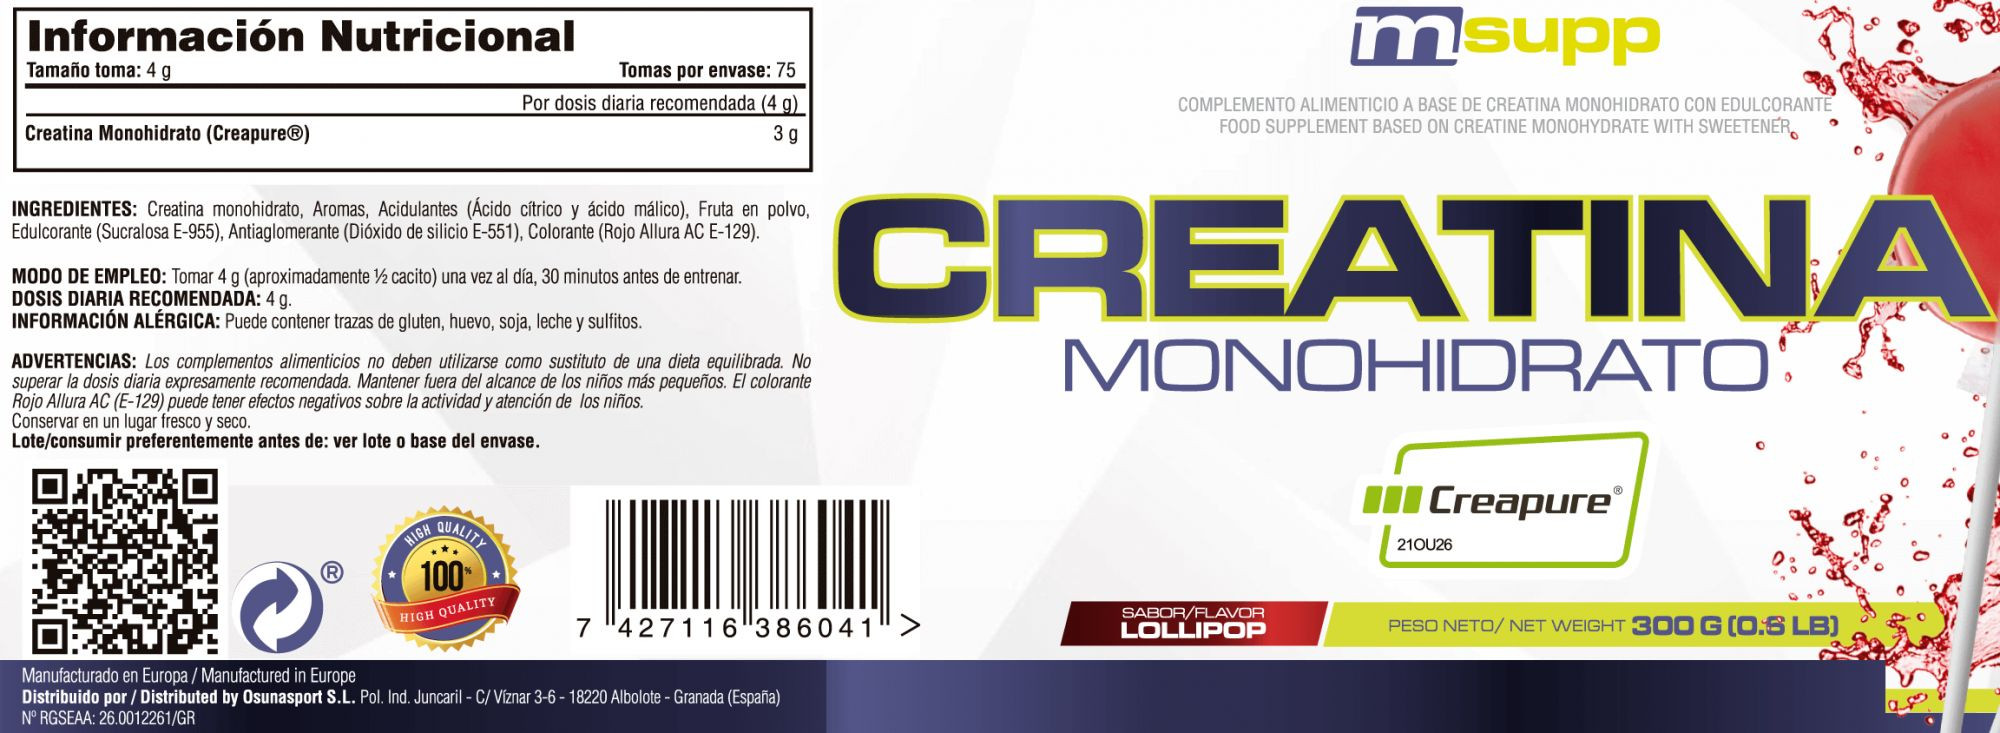 Creatina (Creapure®) - 300g De Mm Supplements Sabor Lollipop  MKP